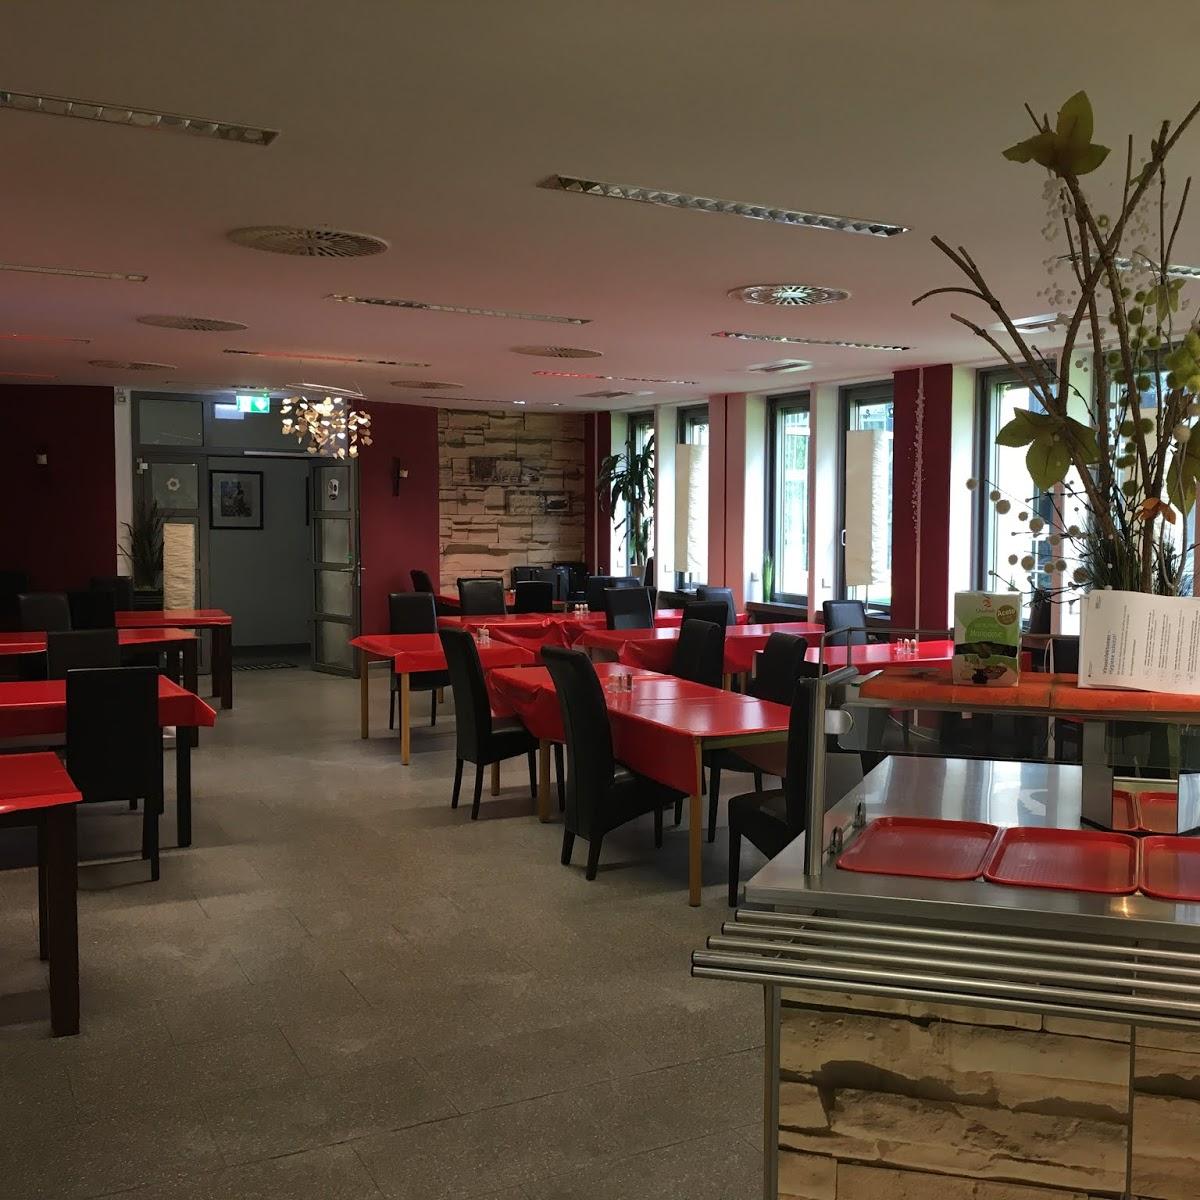 Restaurant "Bistro110" in Frankfurt am Main